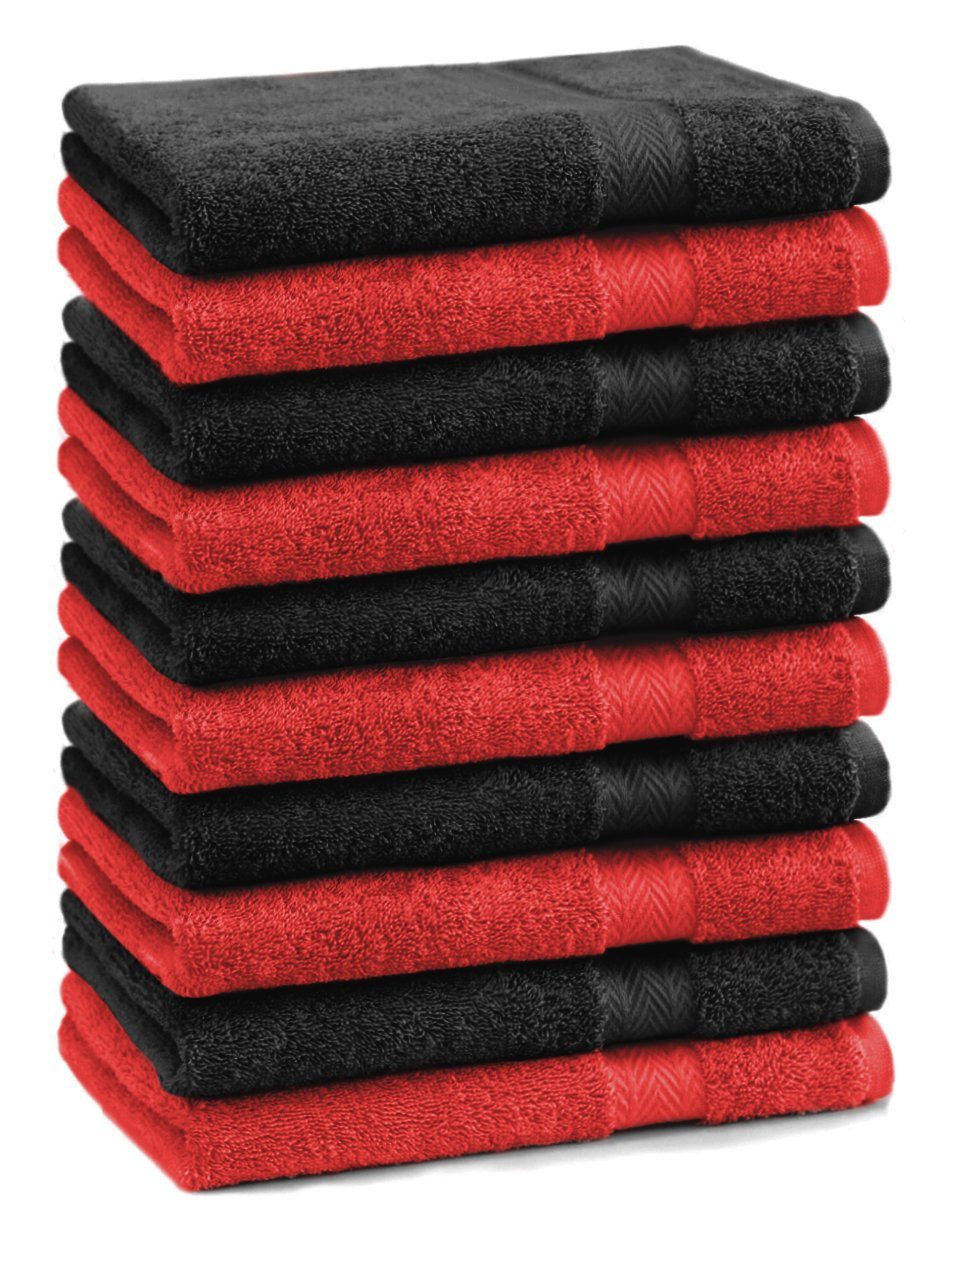 Betz Gästehandtücher 10 Stück Gästehandtücher Premium 100% Baumwolle Gästetuch-Set 30x50 cm Farbe rot und schwarz, 100% Baumwolle